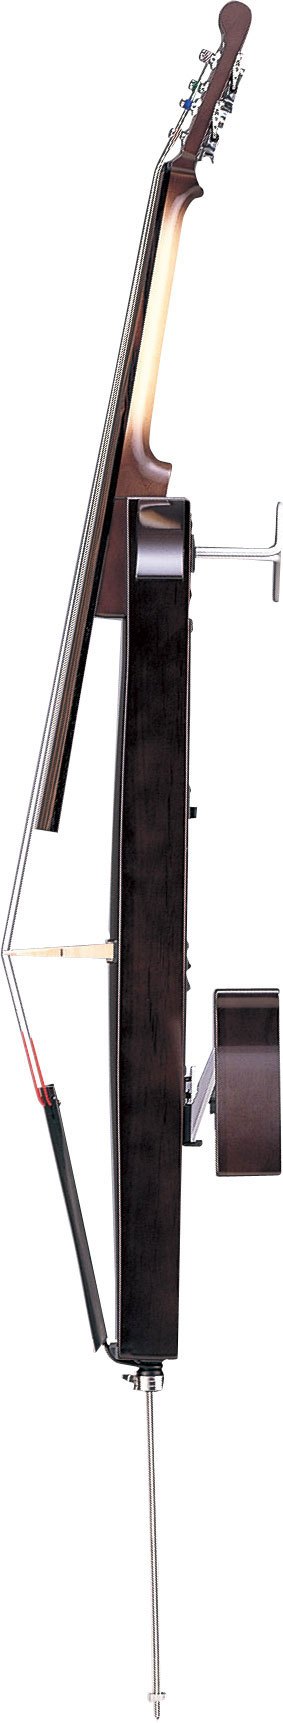 Yamaha Svc-50 Silent Cello - Violoncelle Électrique - Variation 1